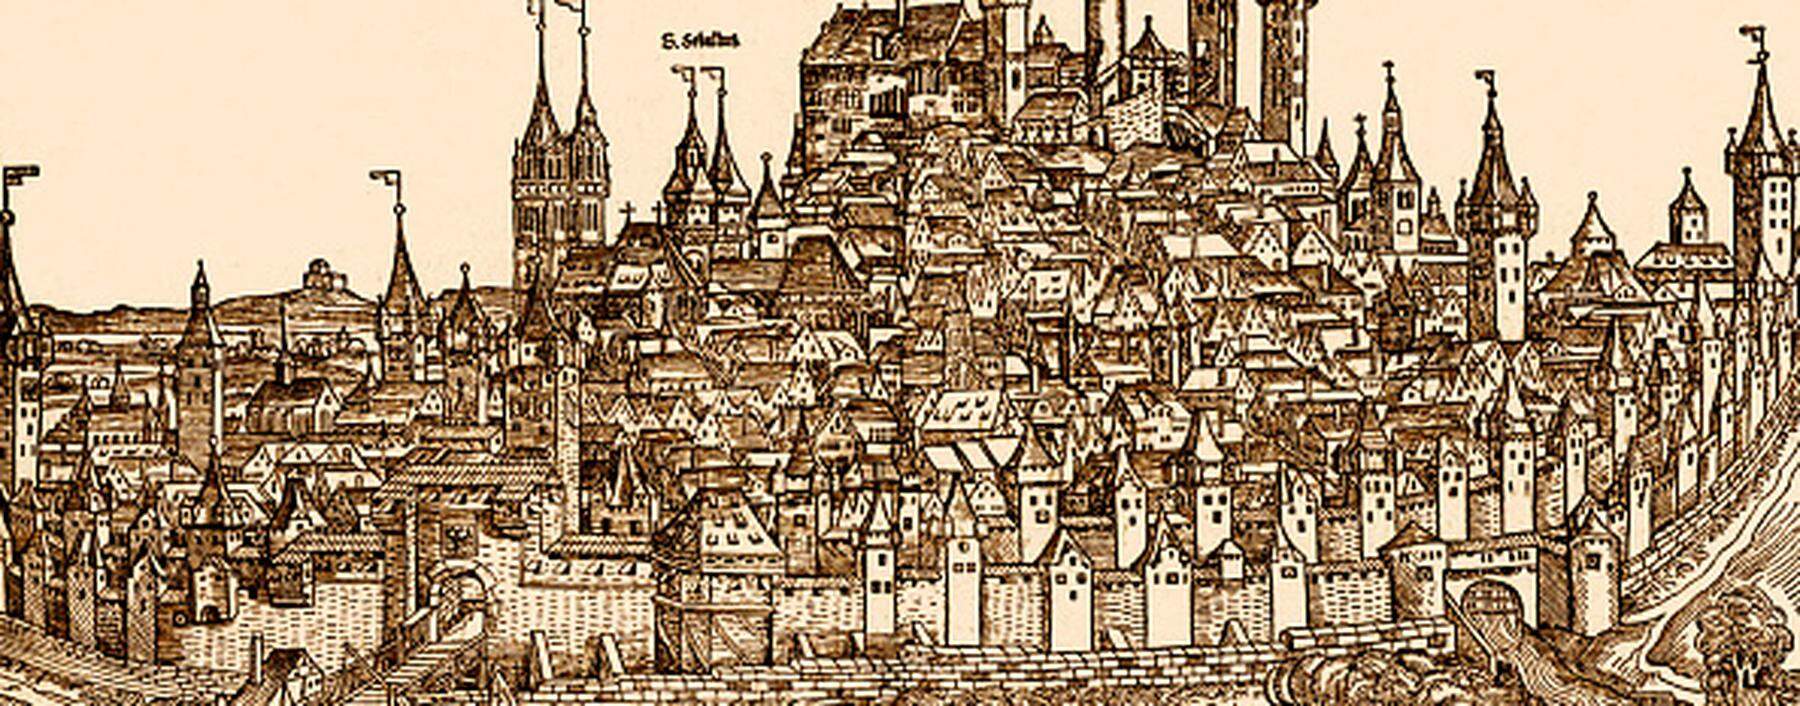 Ansicht von Nürnberg aus dem 15. Jahrhundert, aus Schedels Weltchronik. 